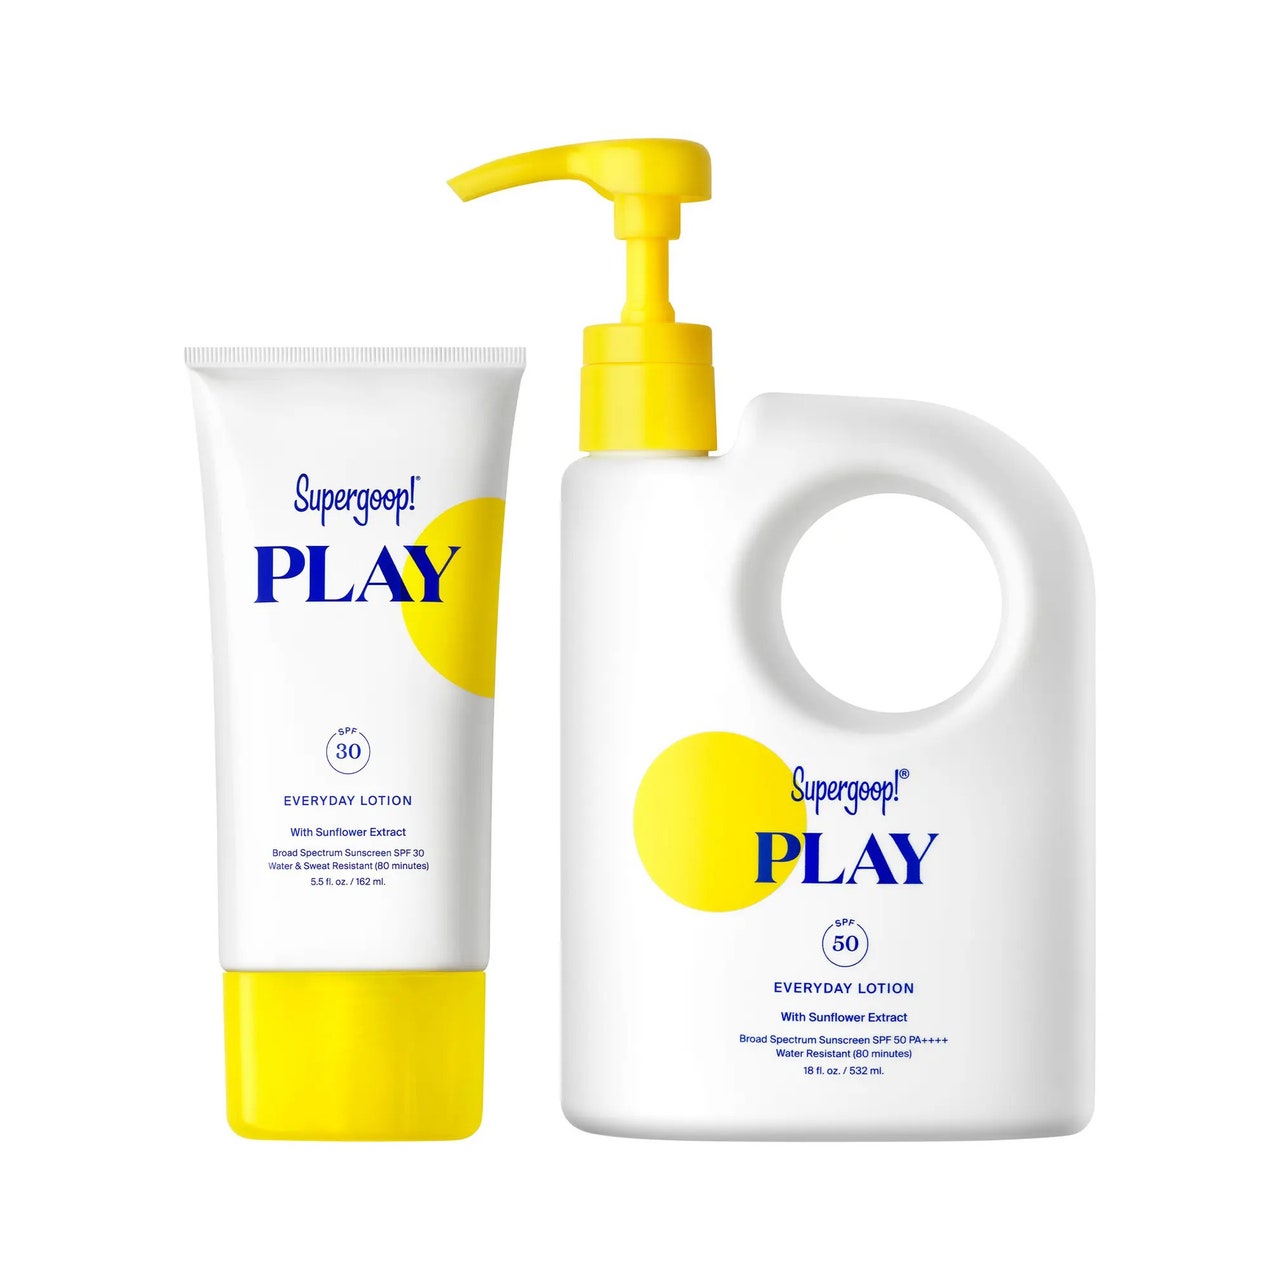 Supergoop Play Sonnenschutzset, weiße Tube mit gelbem Verschluss und weißer Krug mit gelbem Pumpspender auf weißem Hintergrund